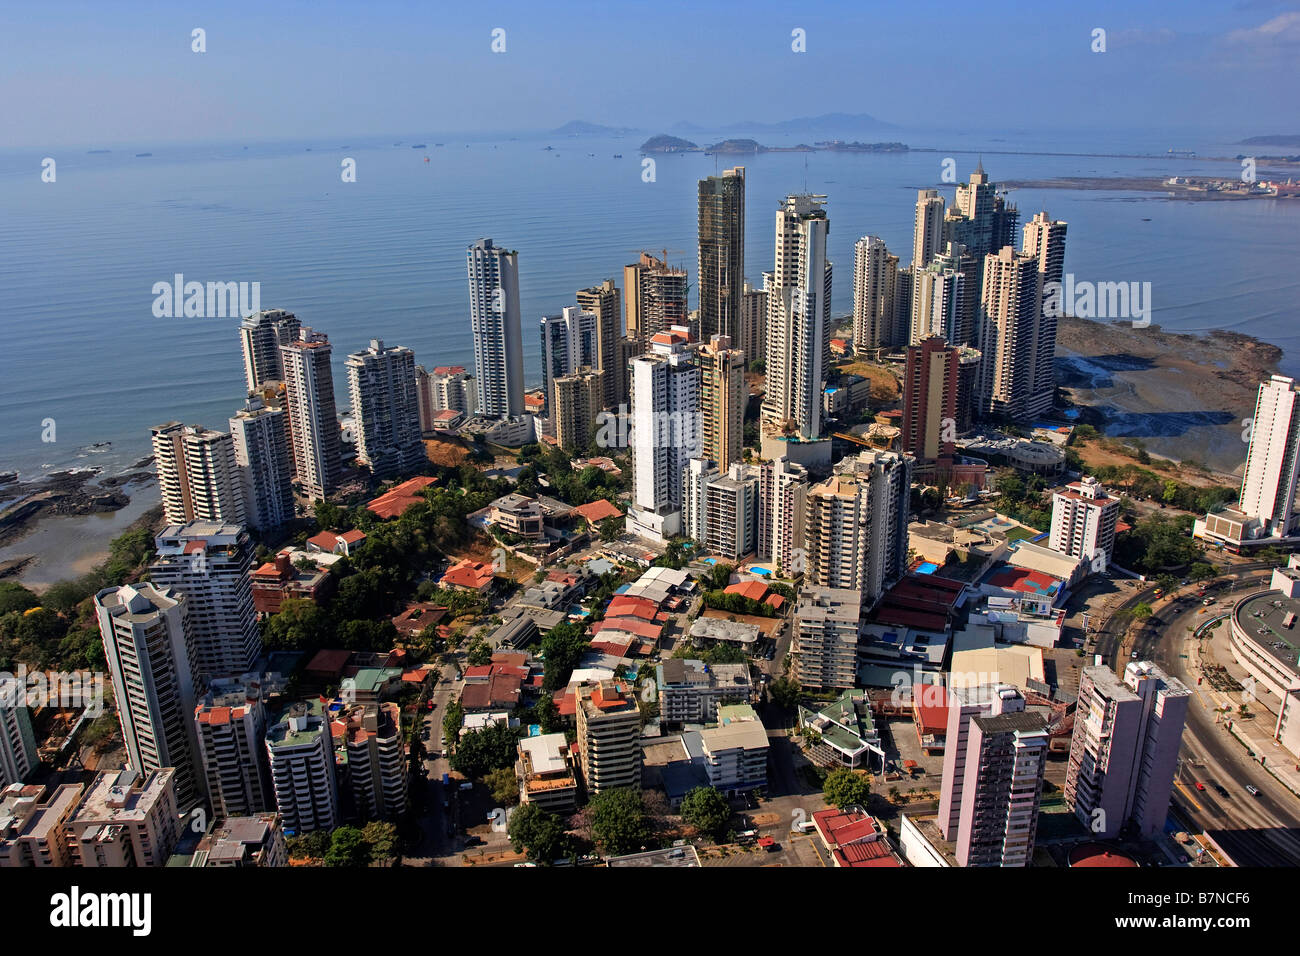 Panama City City Ciudad de Panamá Top to bottom, left to right: Panama Canal, Skyline, Bridge of the Americas, The bovedas, Casco Viejo of Panama. Stock Photo